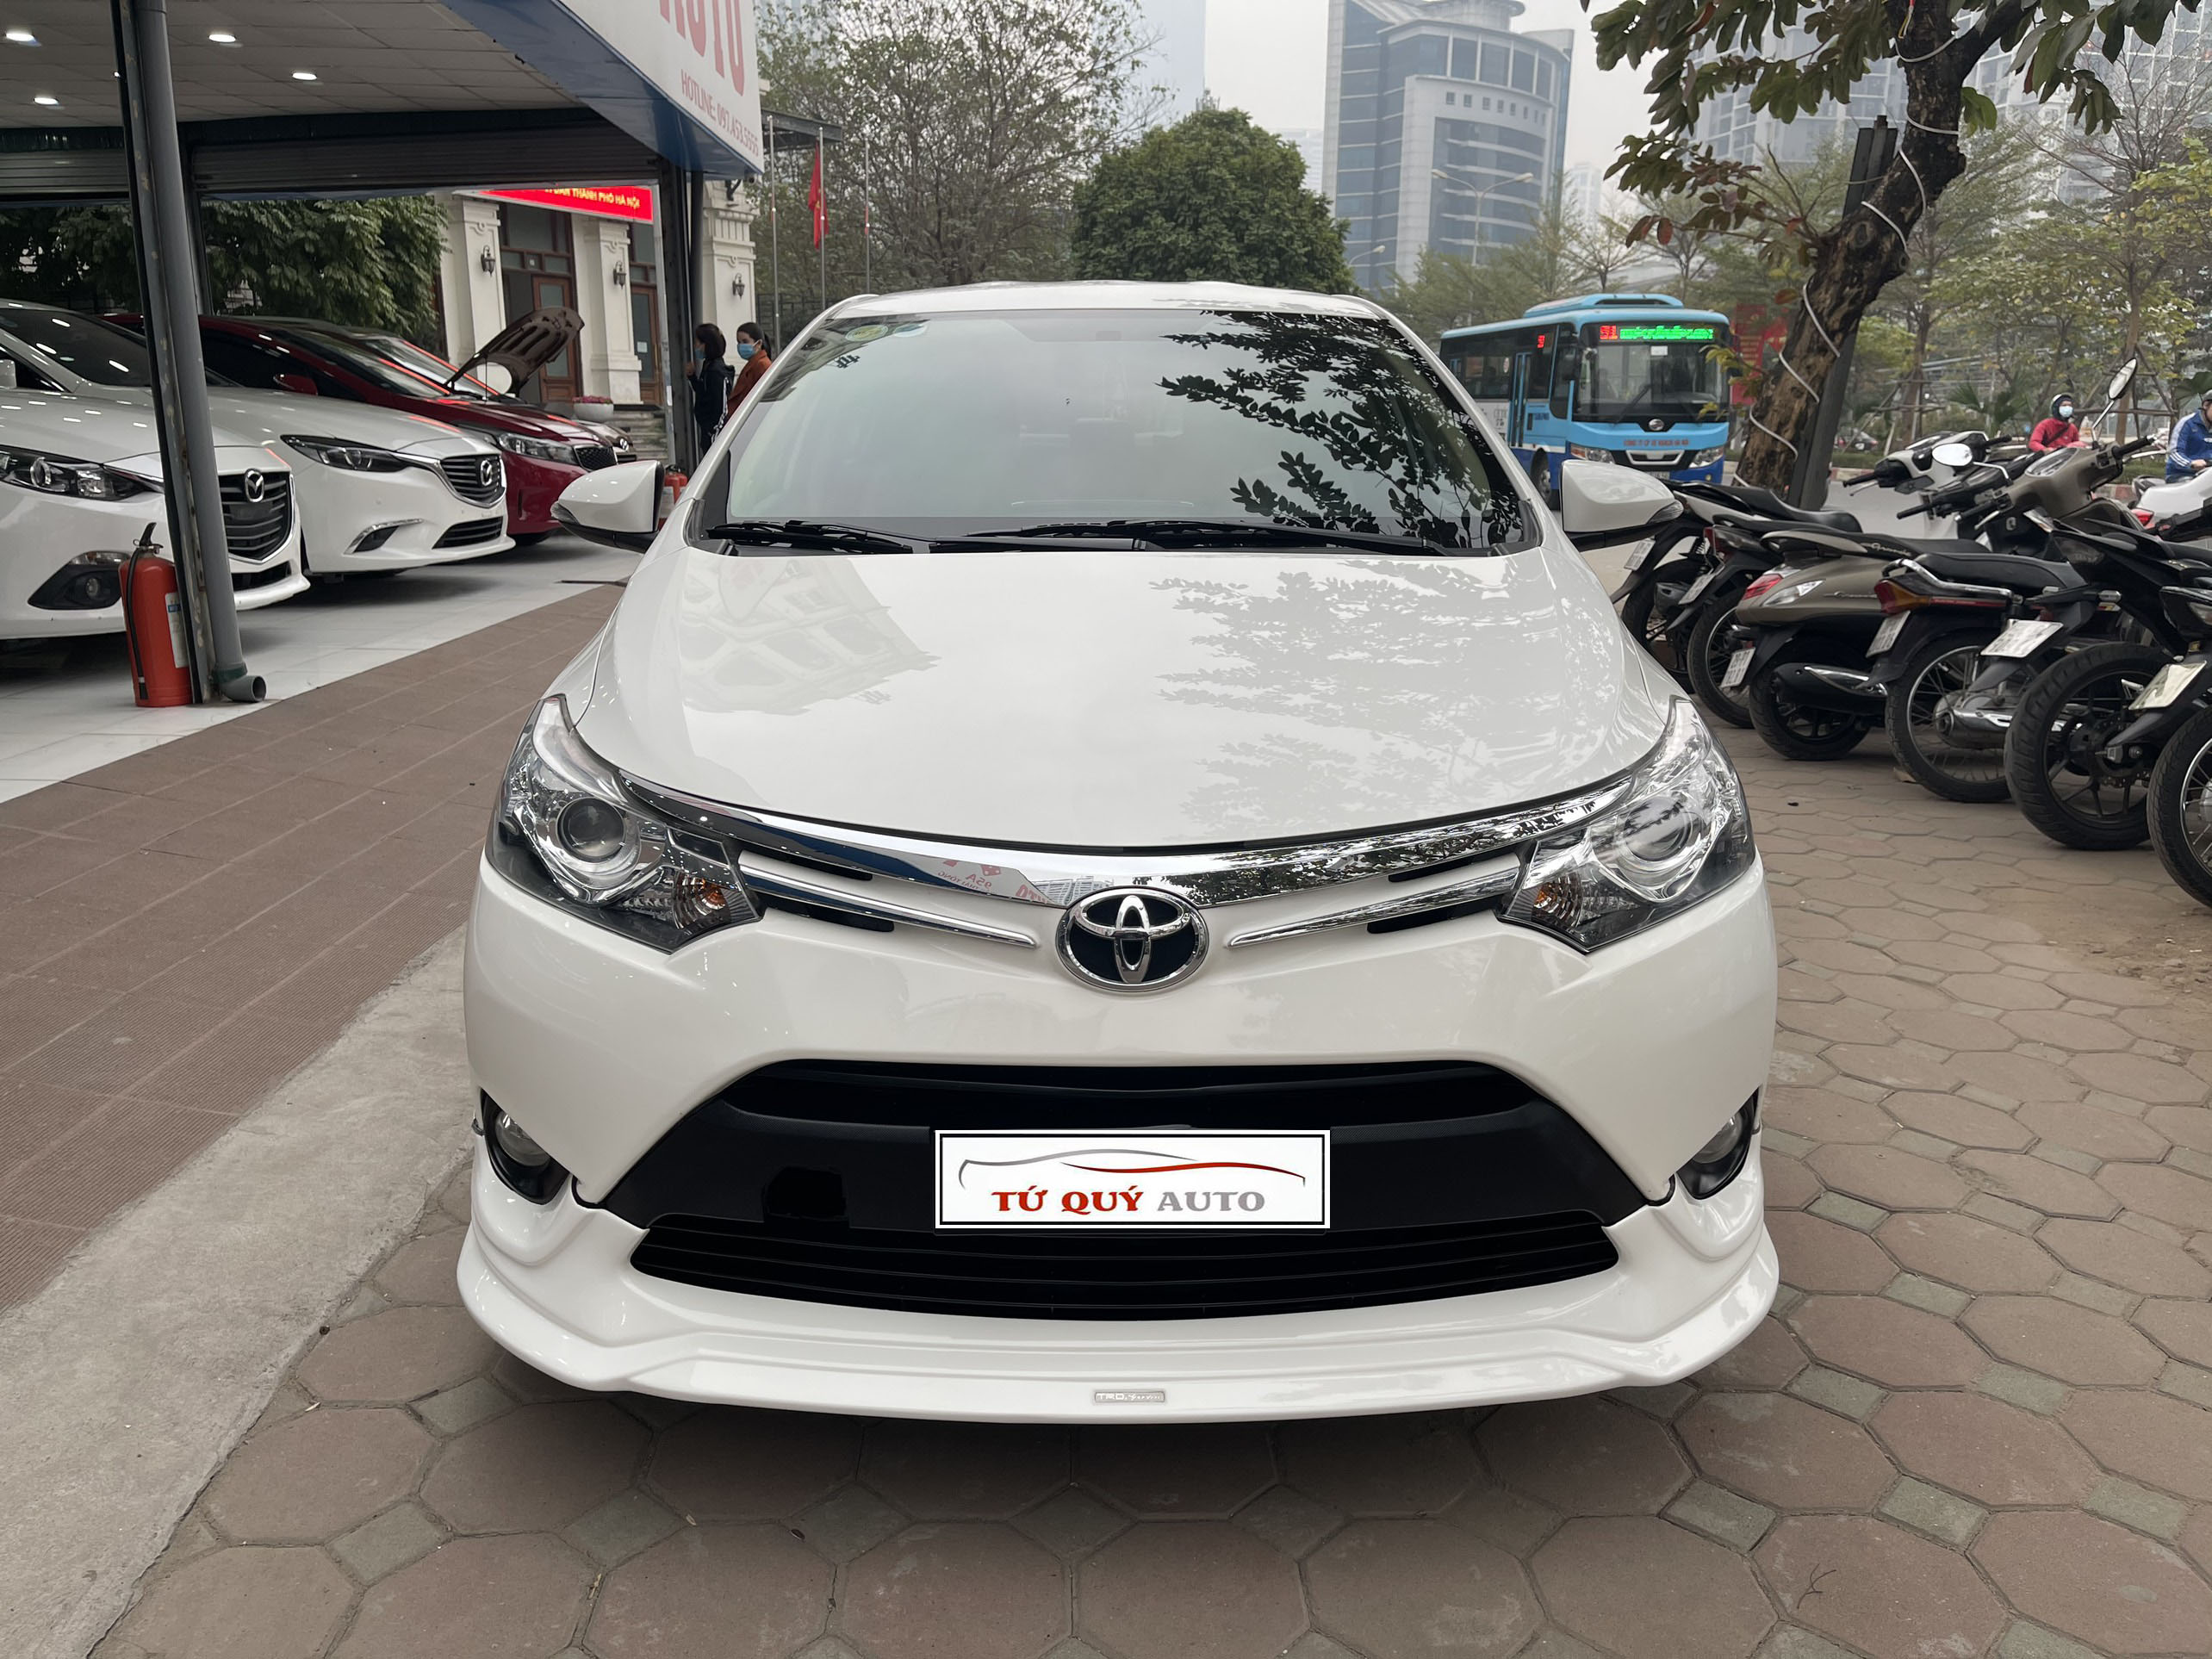 Thêm bodykit Toyota Vios ở Việt Nam có giá 644 triệu đồng   Haianhtravelcom